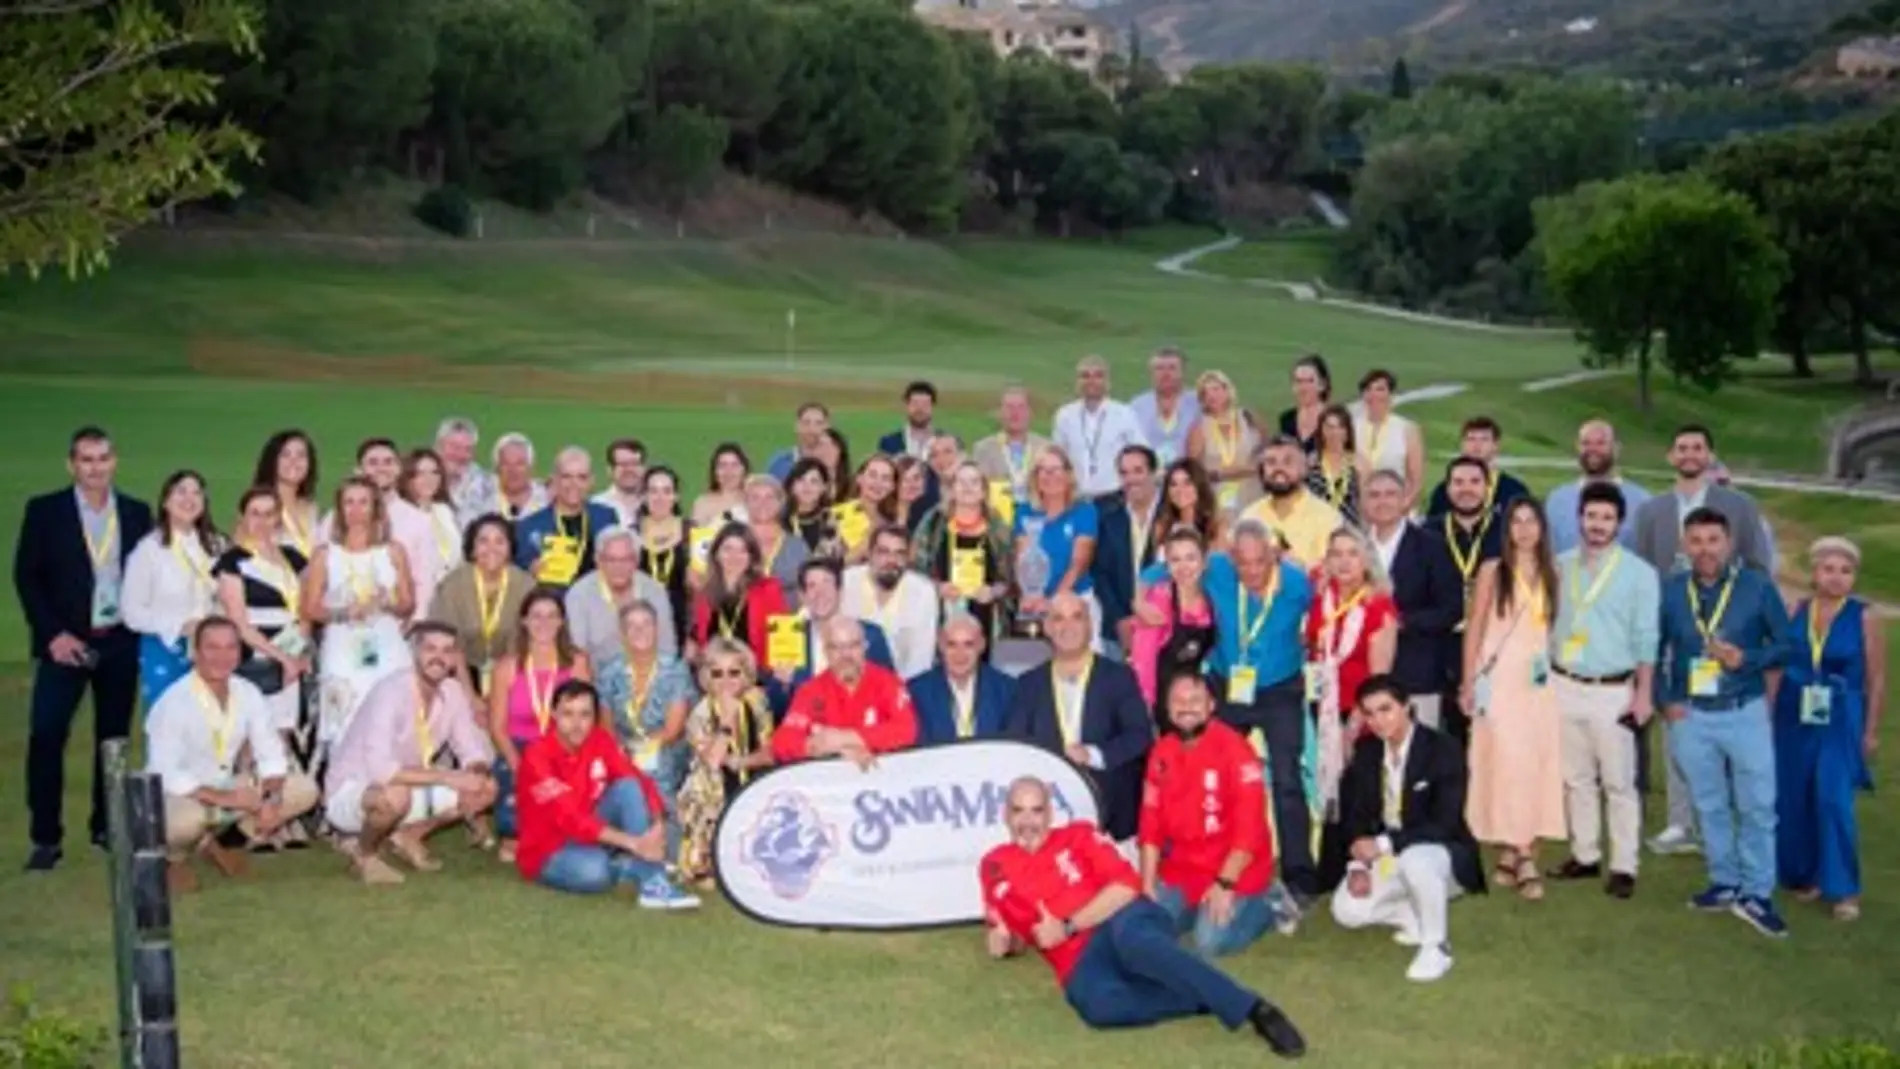 La 8ª Edición de la Cumbre All Stars se clausura en Santa María Golf Club con el Networking Solheim Cup 